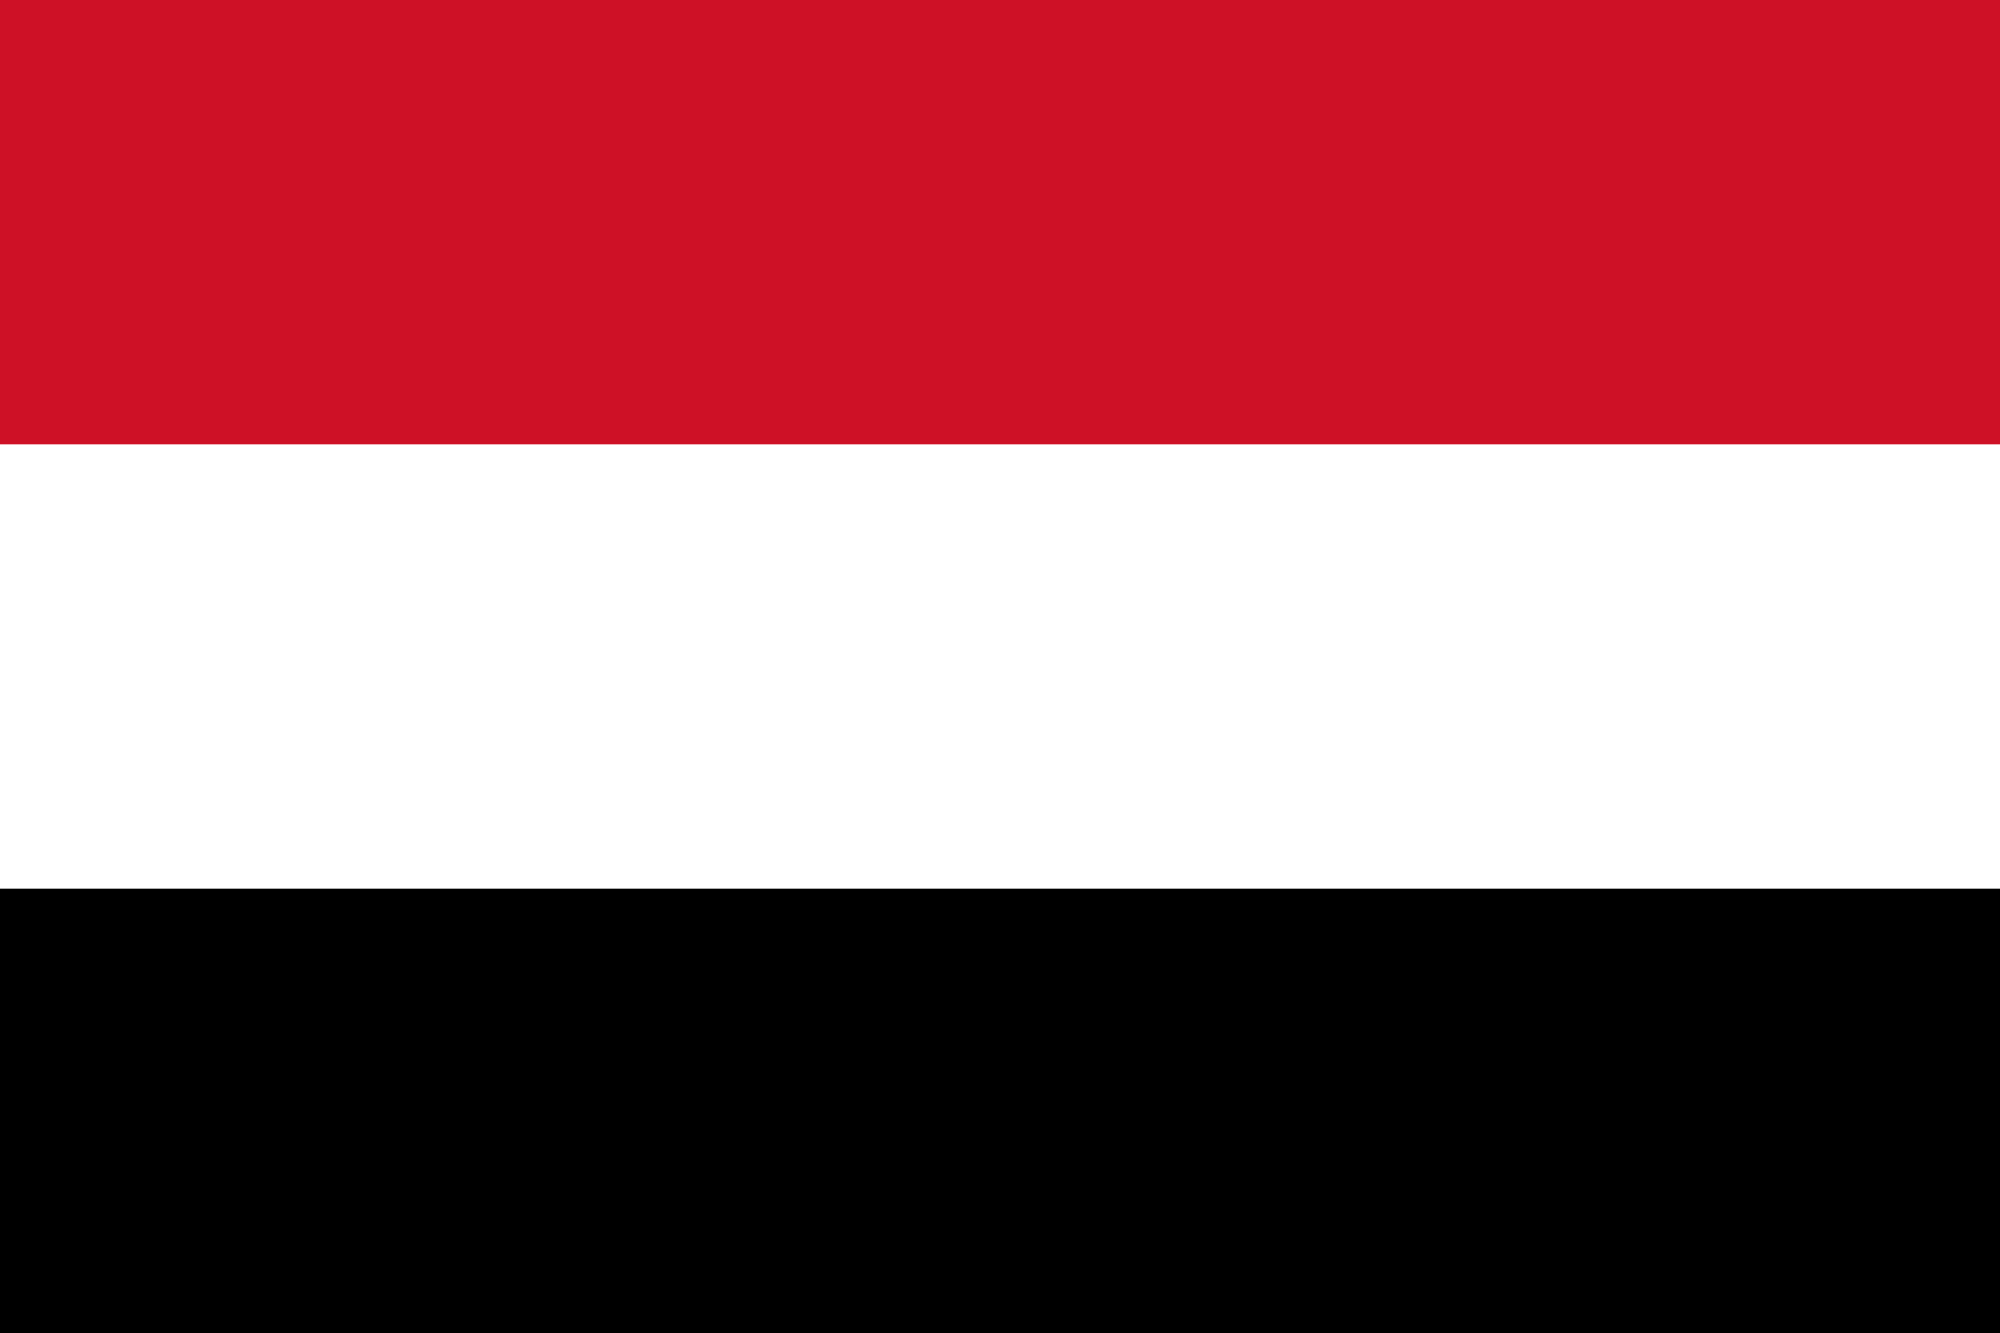 صور علم اليمن , احلى صورة لعلم اليمن صبايا كيوت